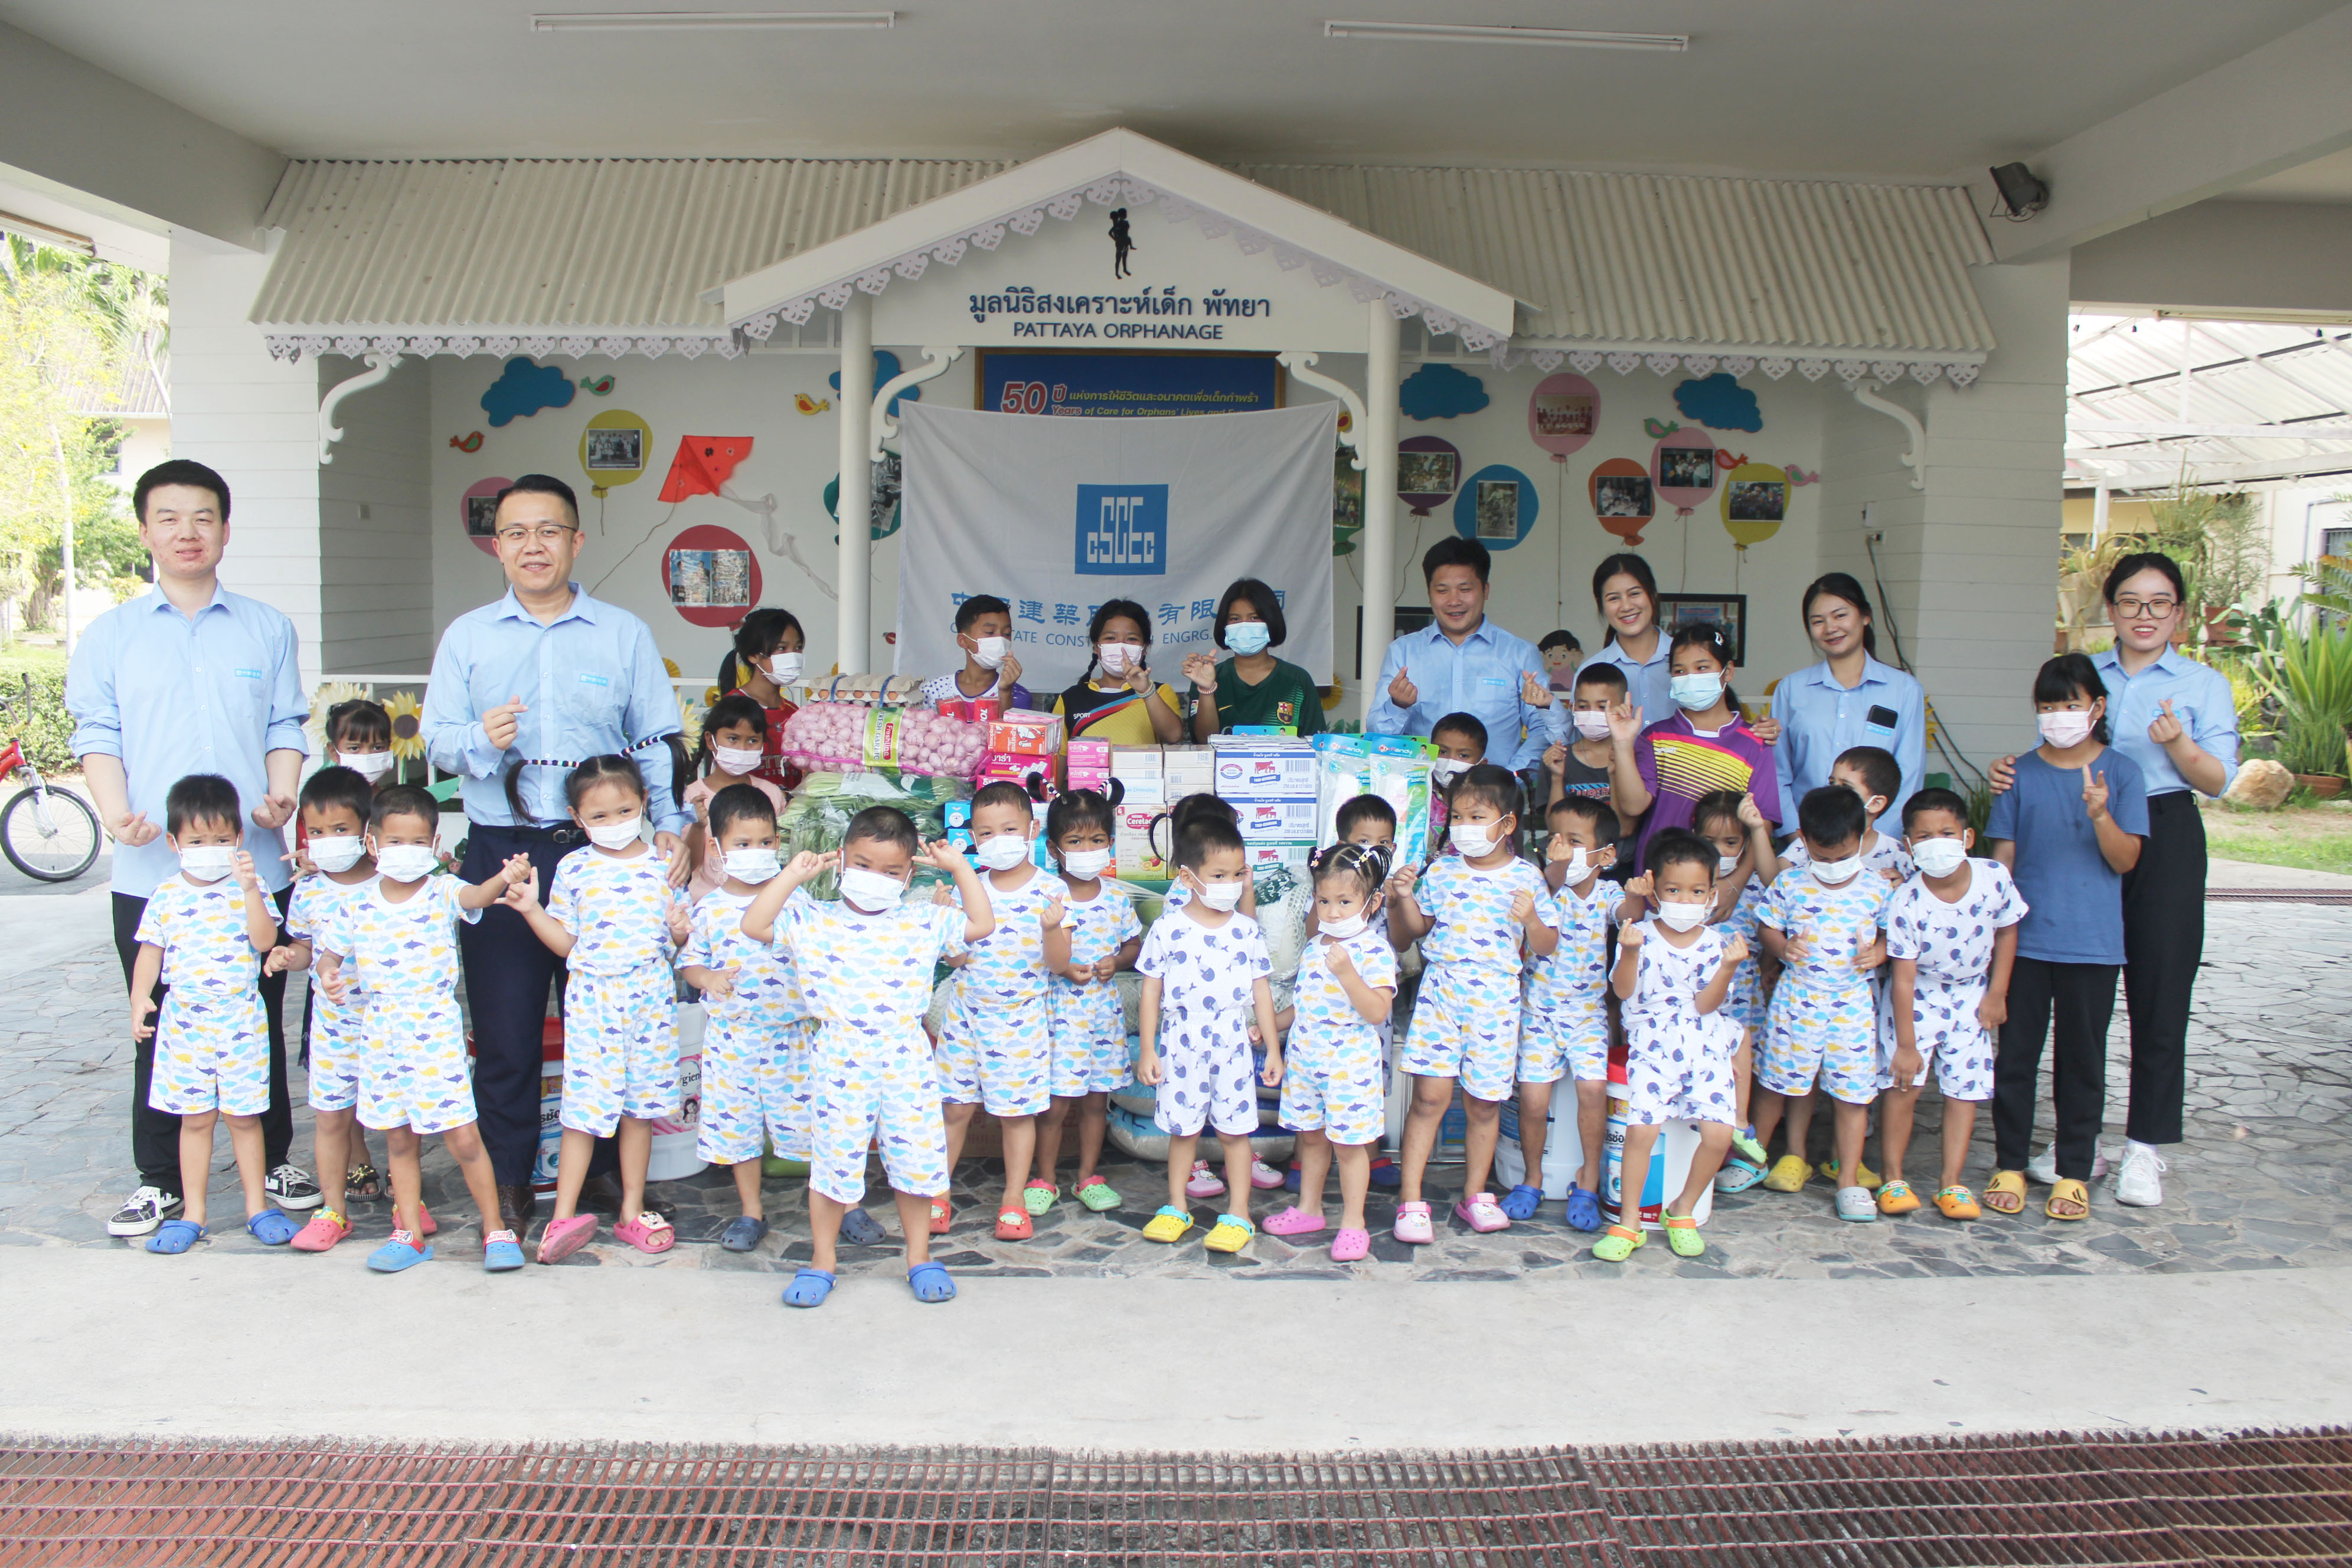 中国建筑中泰青年赴泰国芭提雅孤儿院开展志愿服务1.jpg